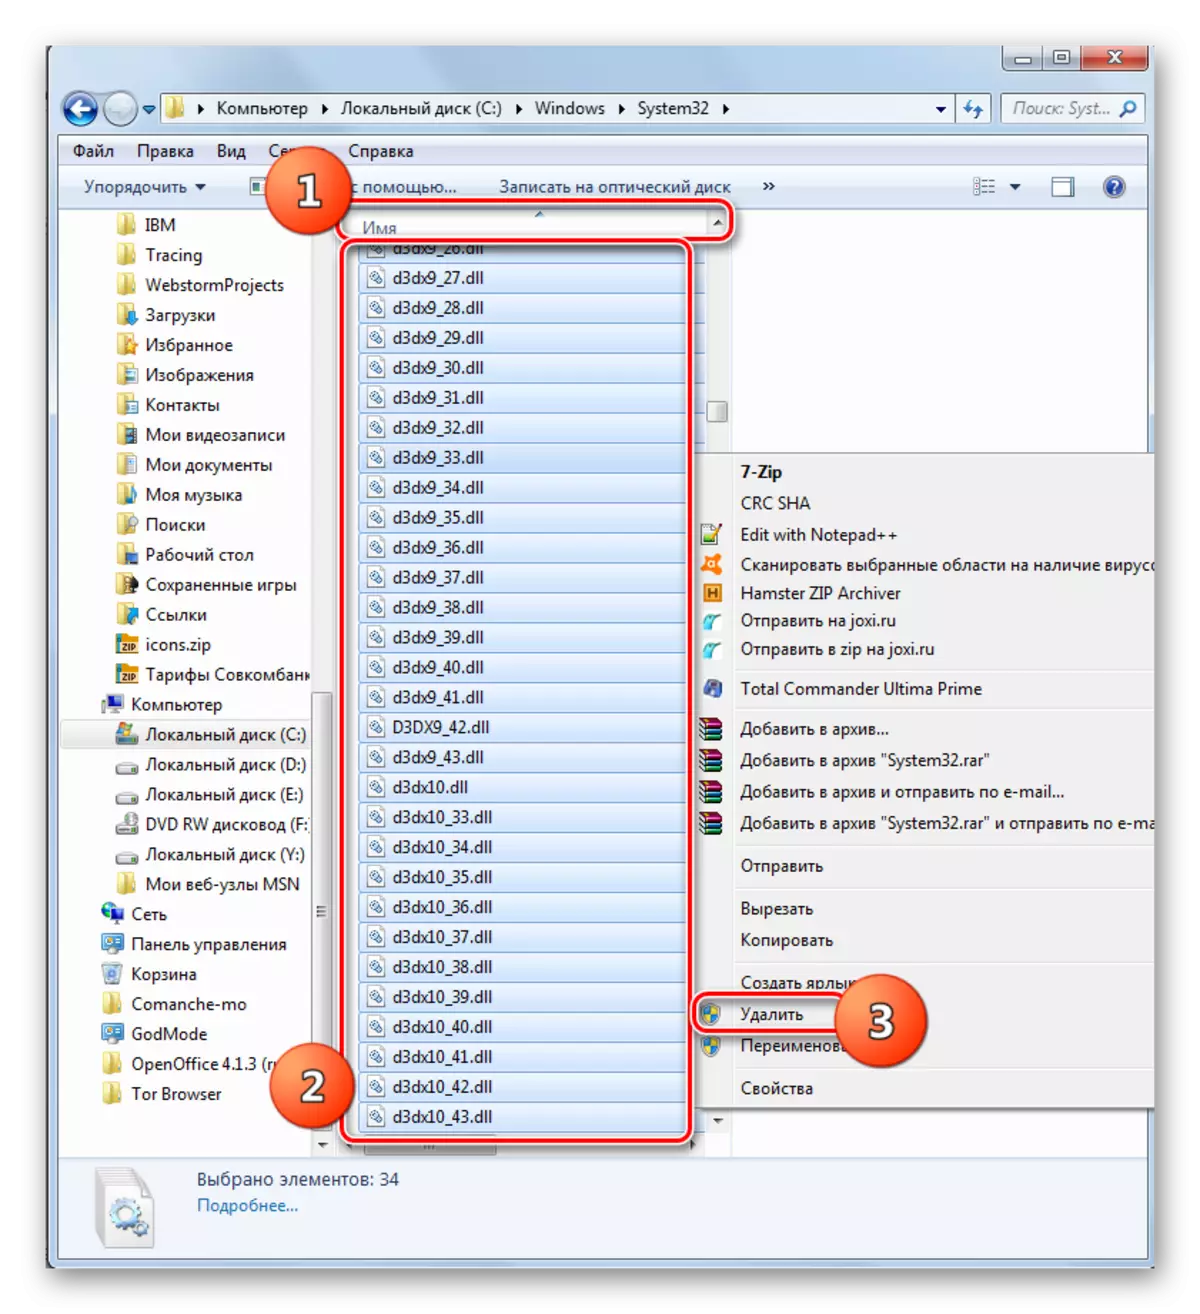 Gå till Radera DLL-filer i mappen System 32 i Explorer i Windows 7